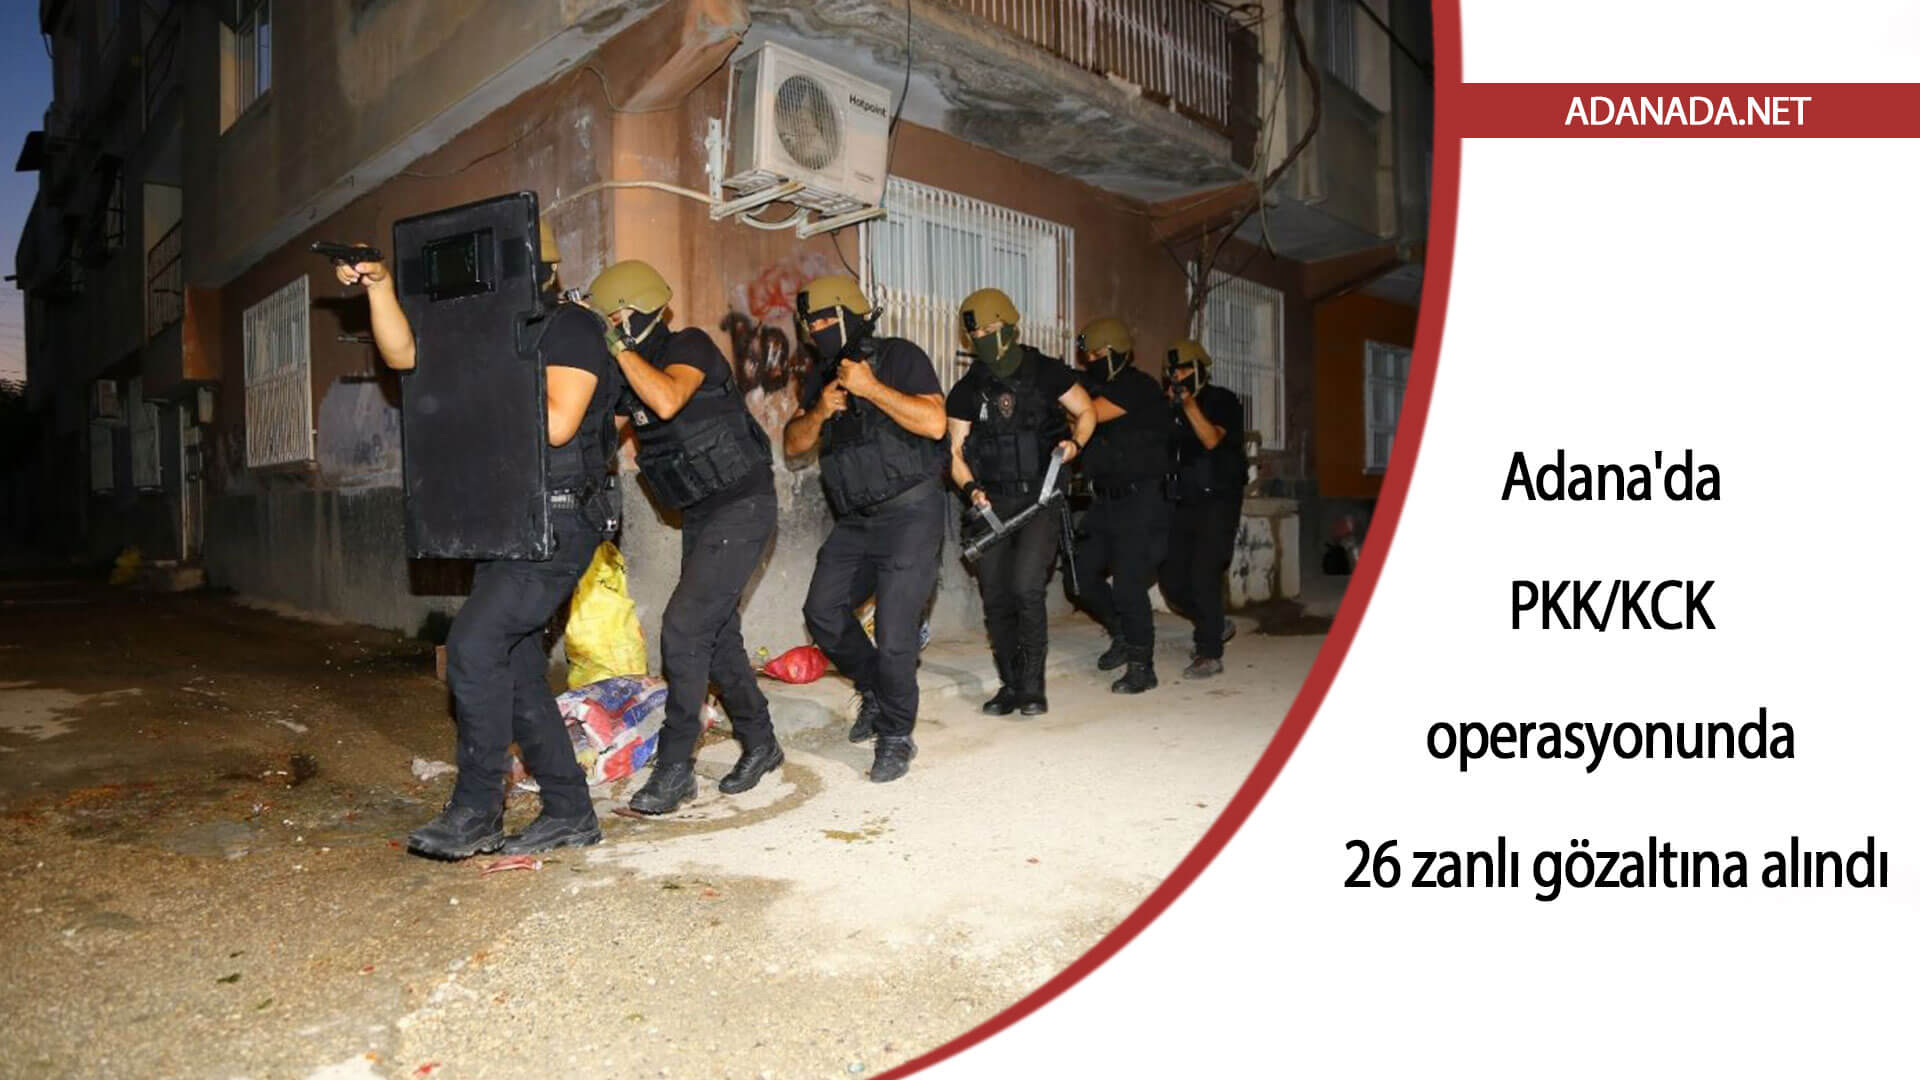 Adana’da PKK/KCK operasyonunda 26 zanlı gözaltına alındı